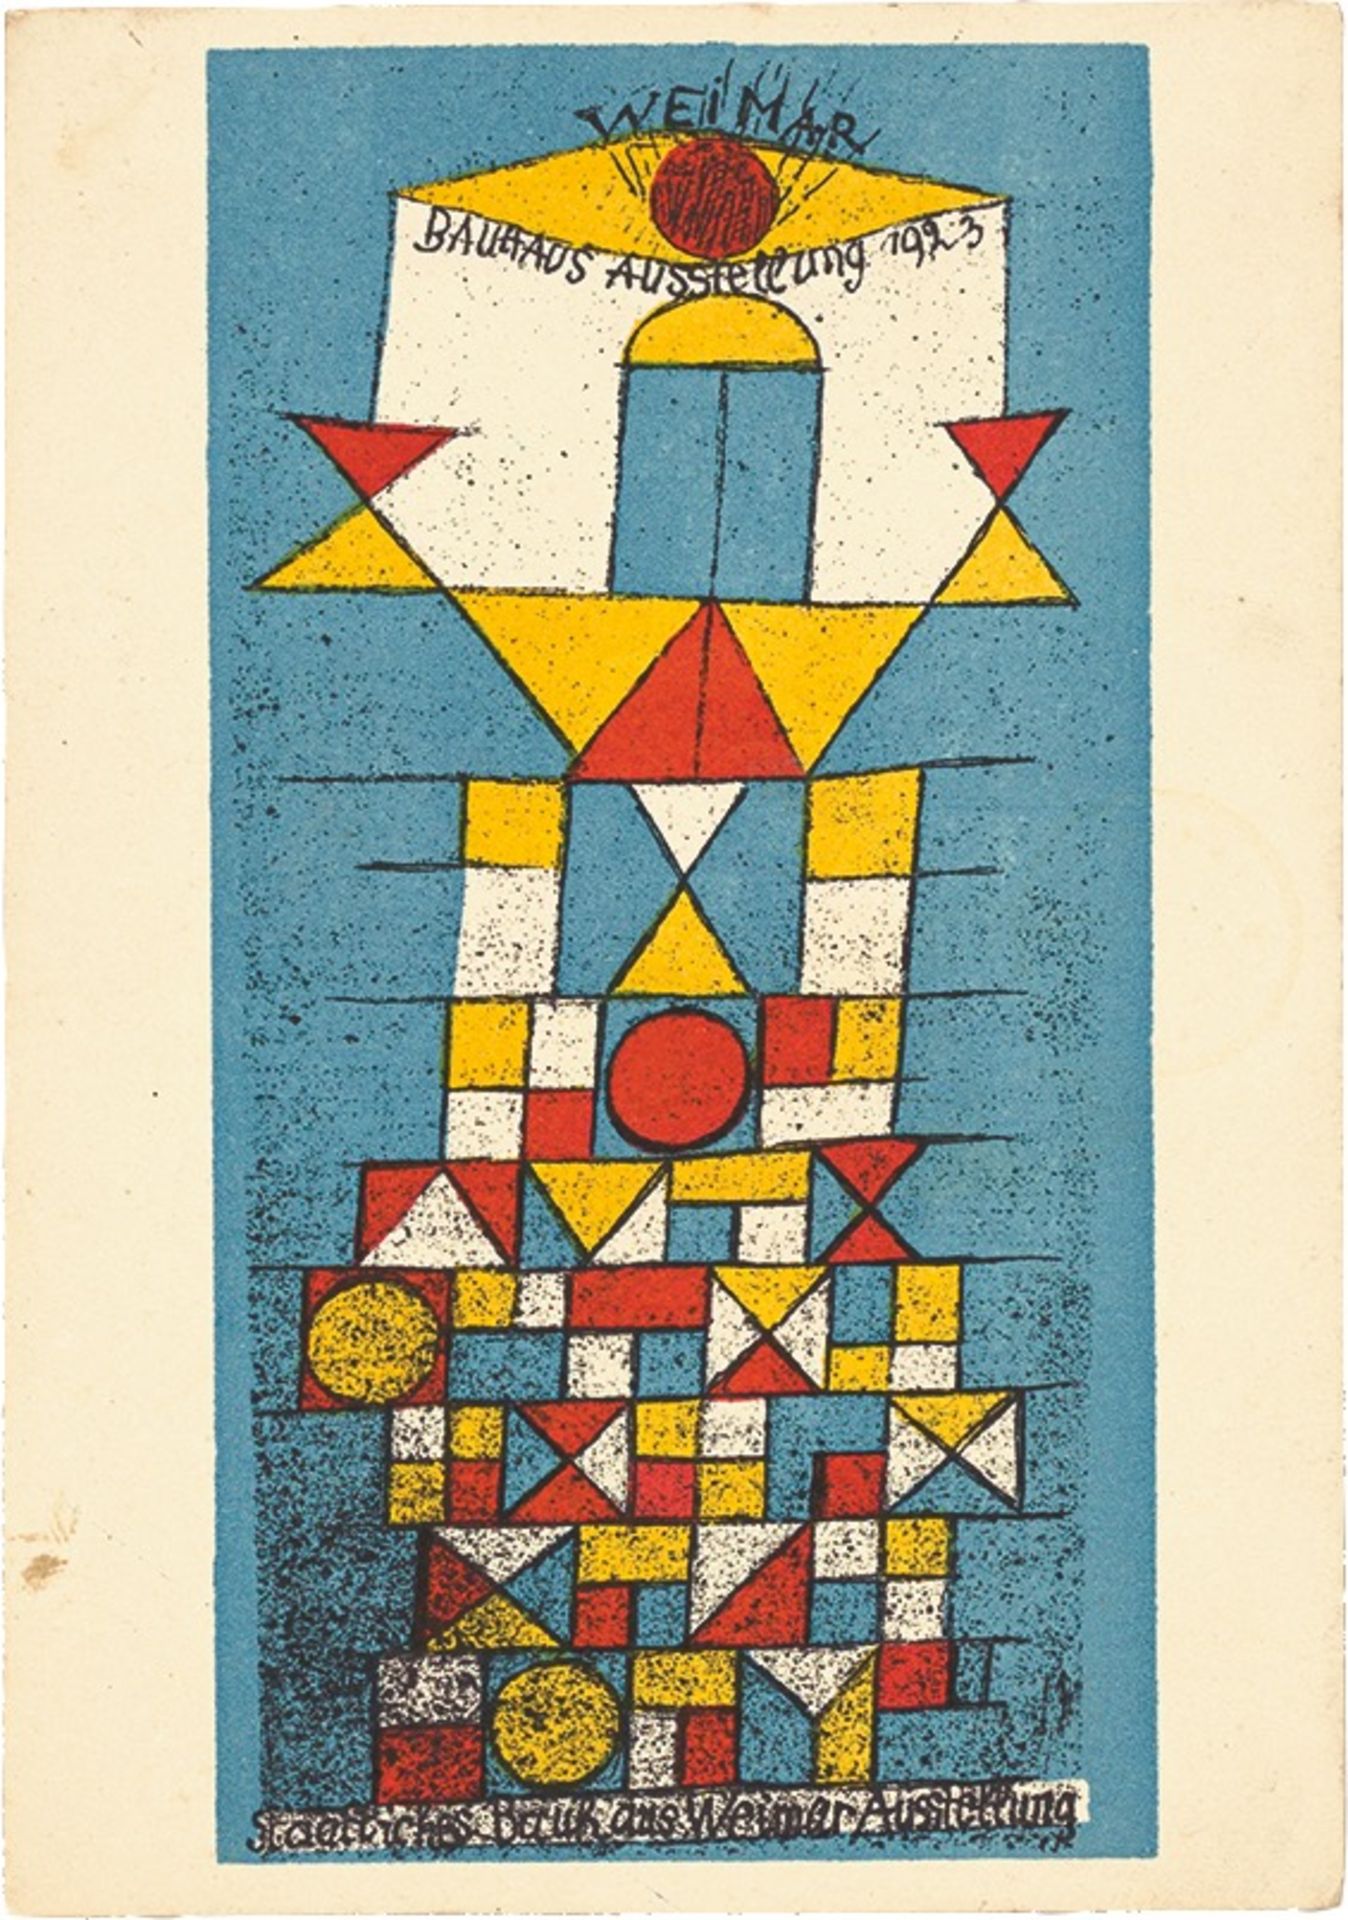 Bauhaus. ”Ausstellung Weimar 1923” – 20 postcards by various Bauhaus artists. 1923 - Image 4 of 20